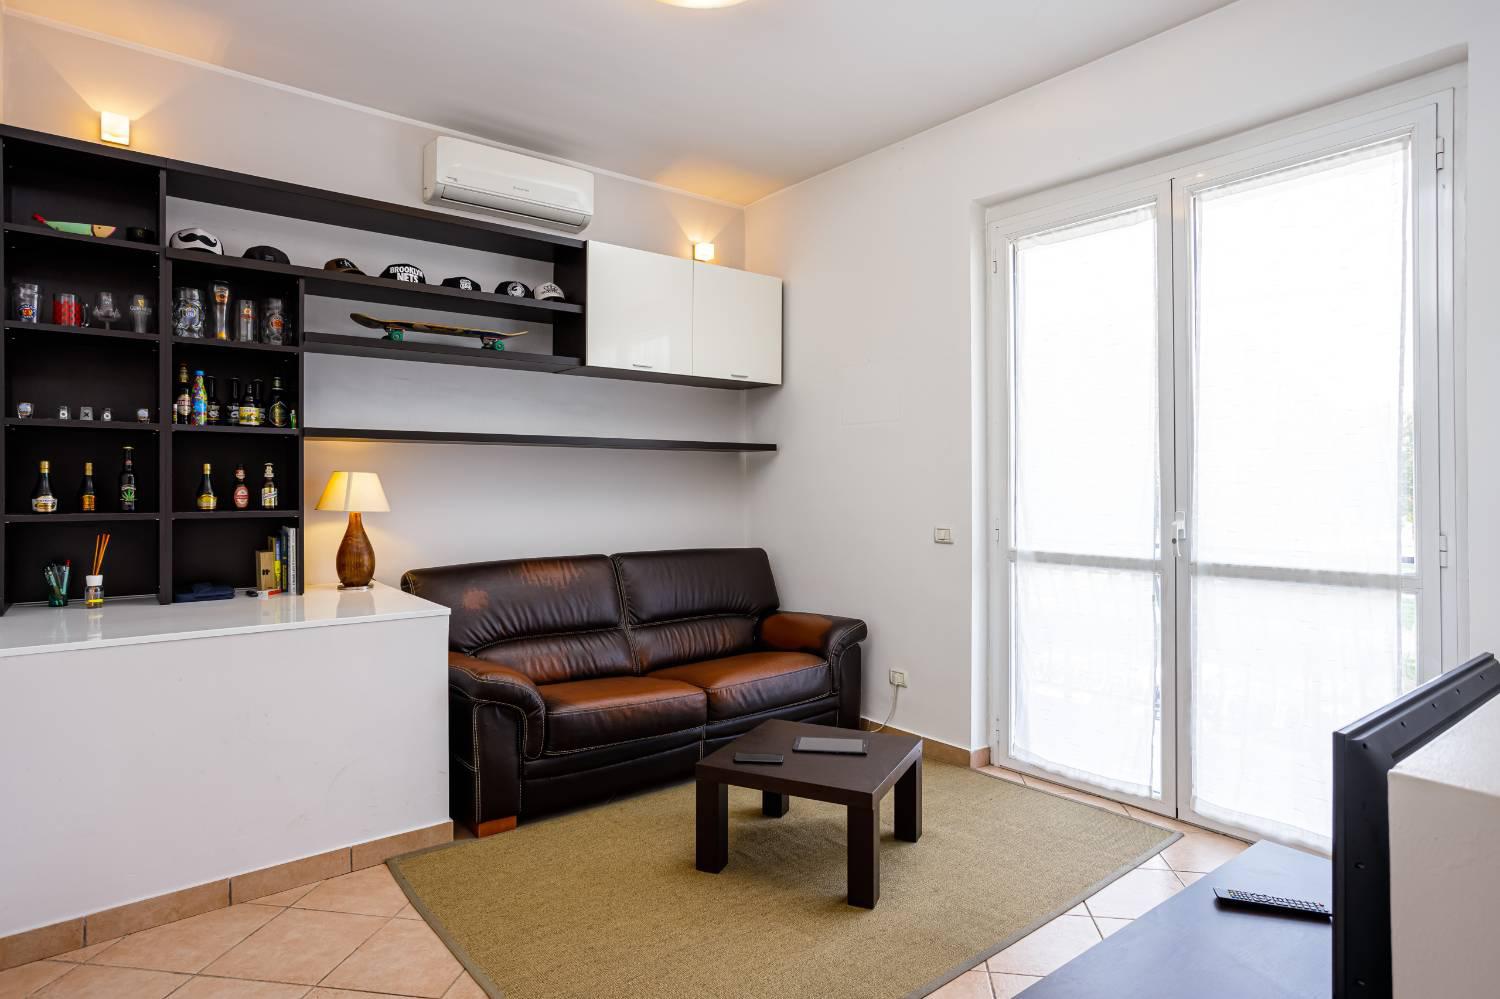 Appartamento in vendita a Cerro al Lambro, 2 locali, zona zo, prezzo € 93.000 | PortaleAgenzieImmobiliari.it